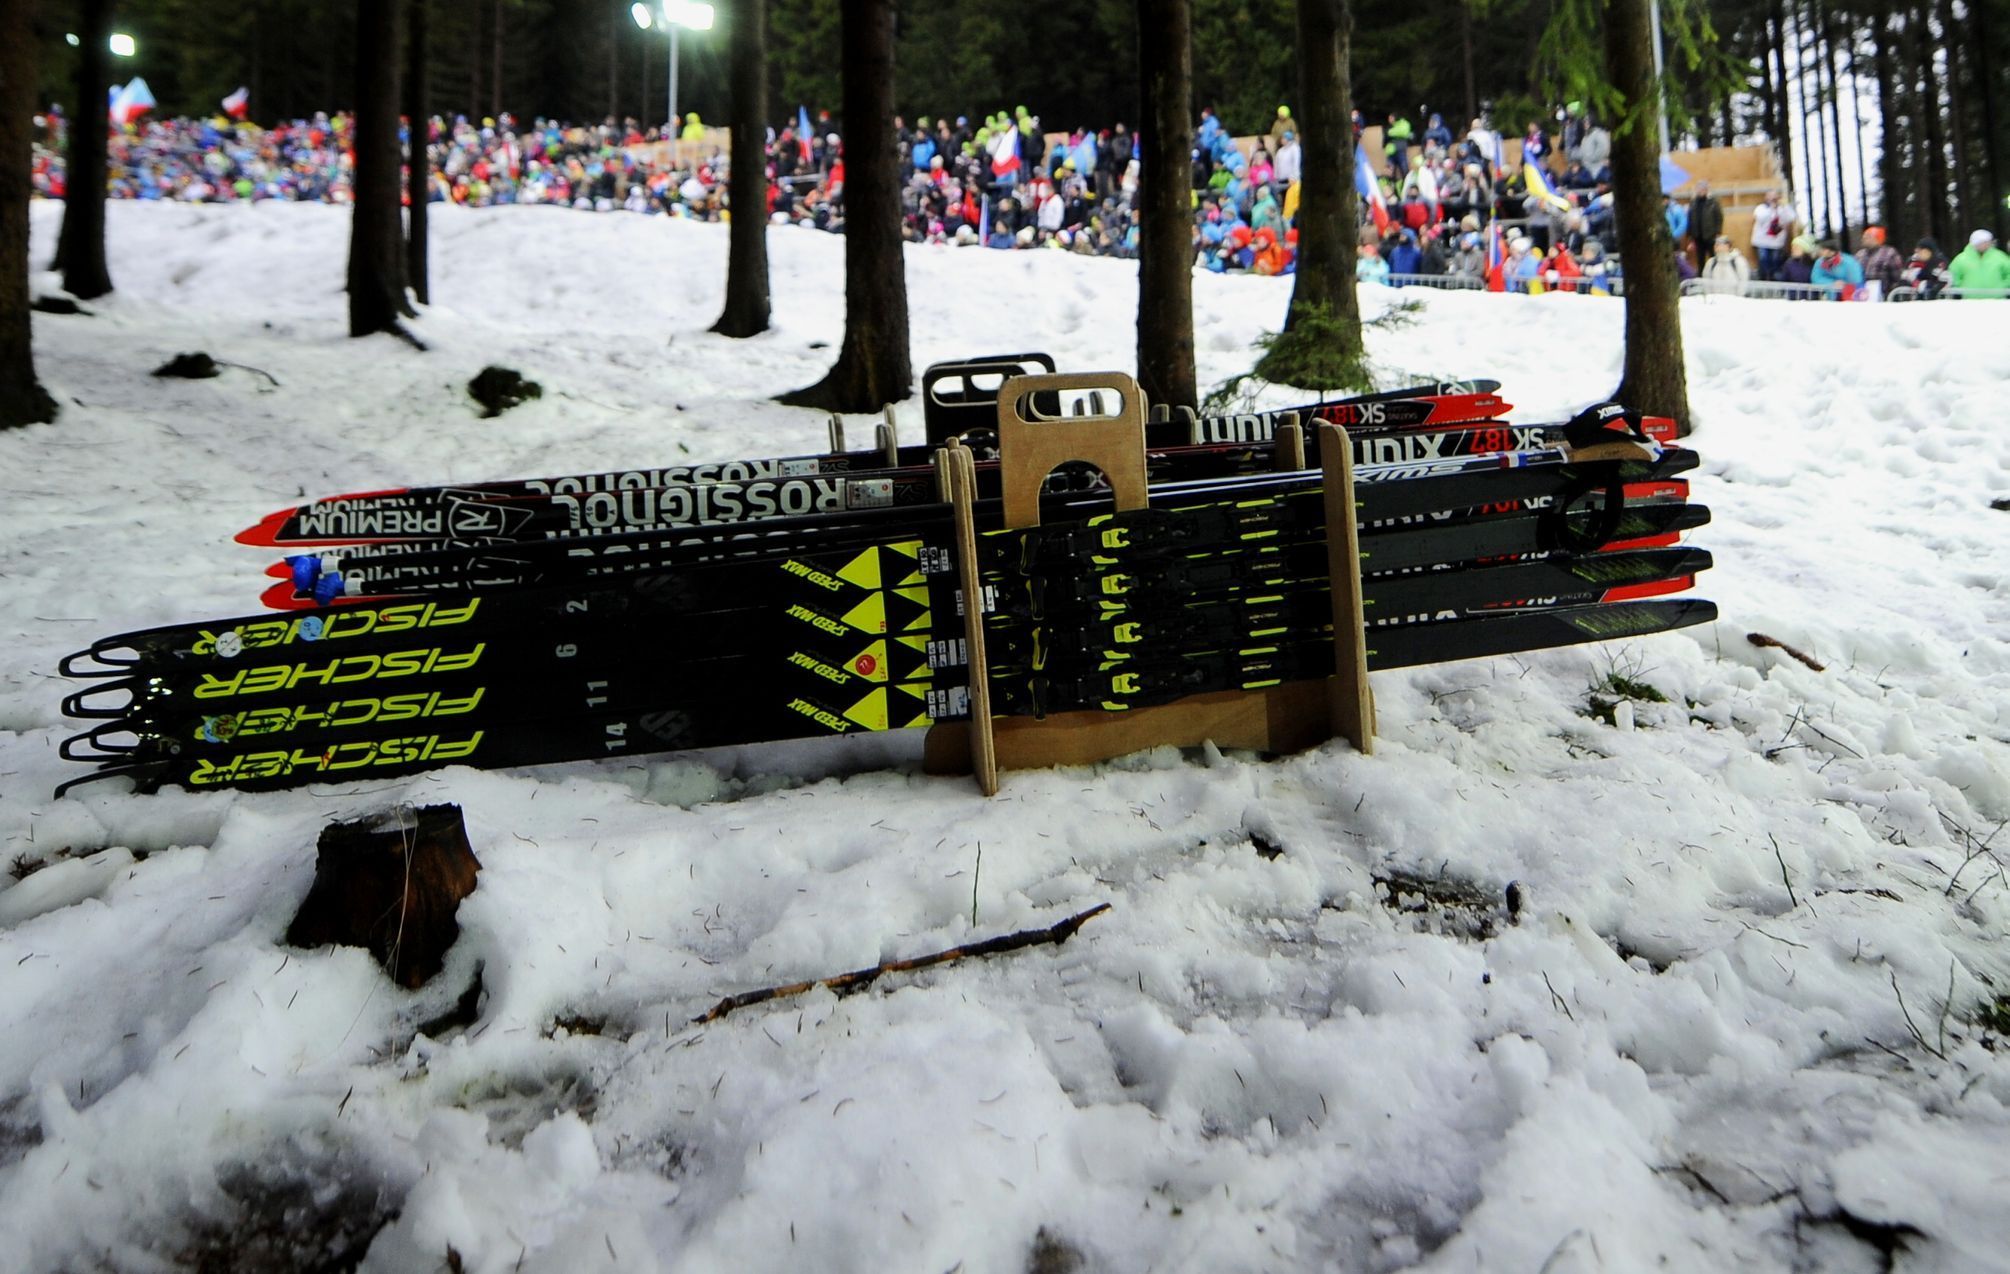 Běžecké lyže připravené na stíhačku SP v Novém Městě na Moravě 2018.